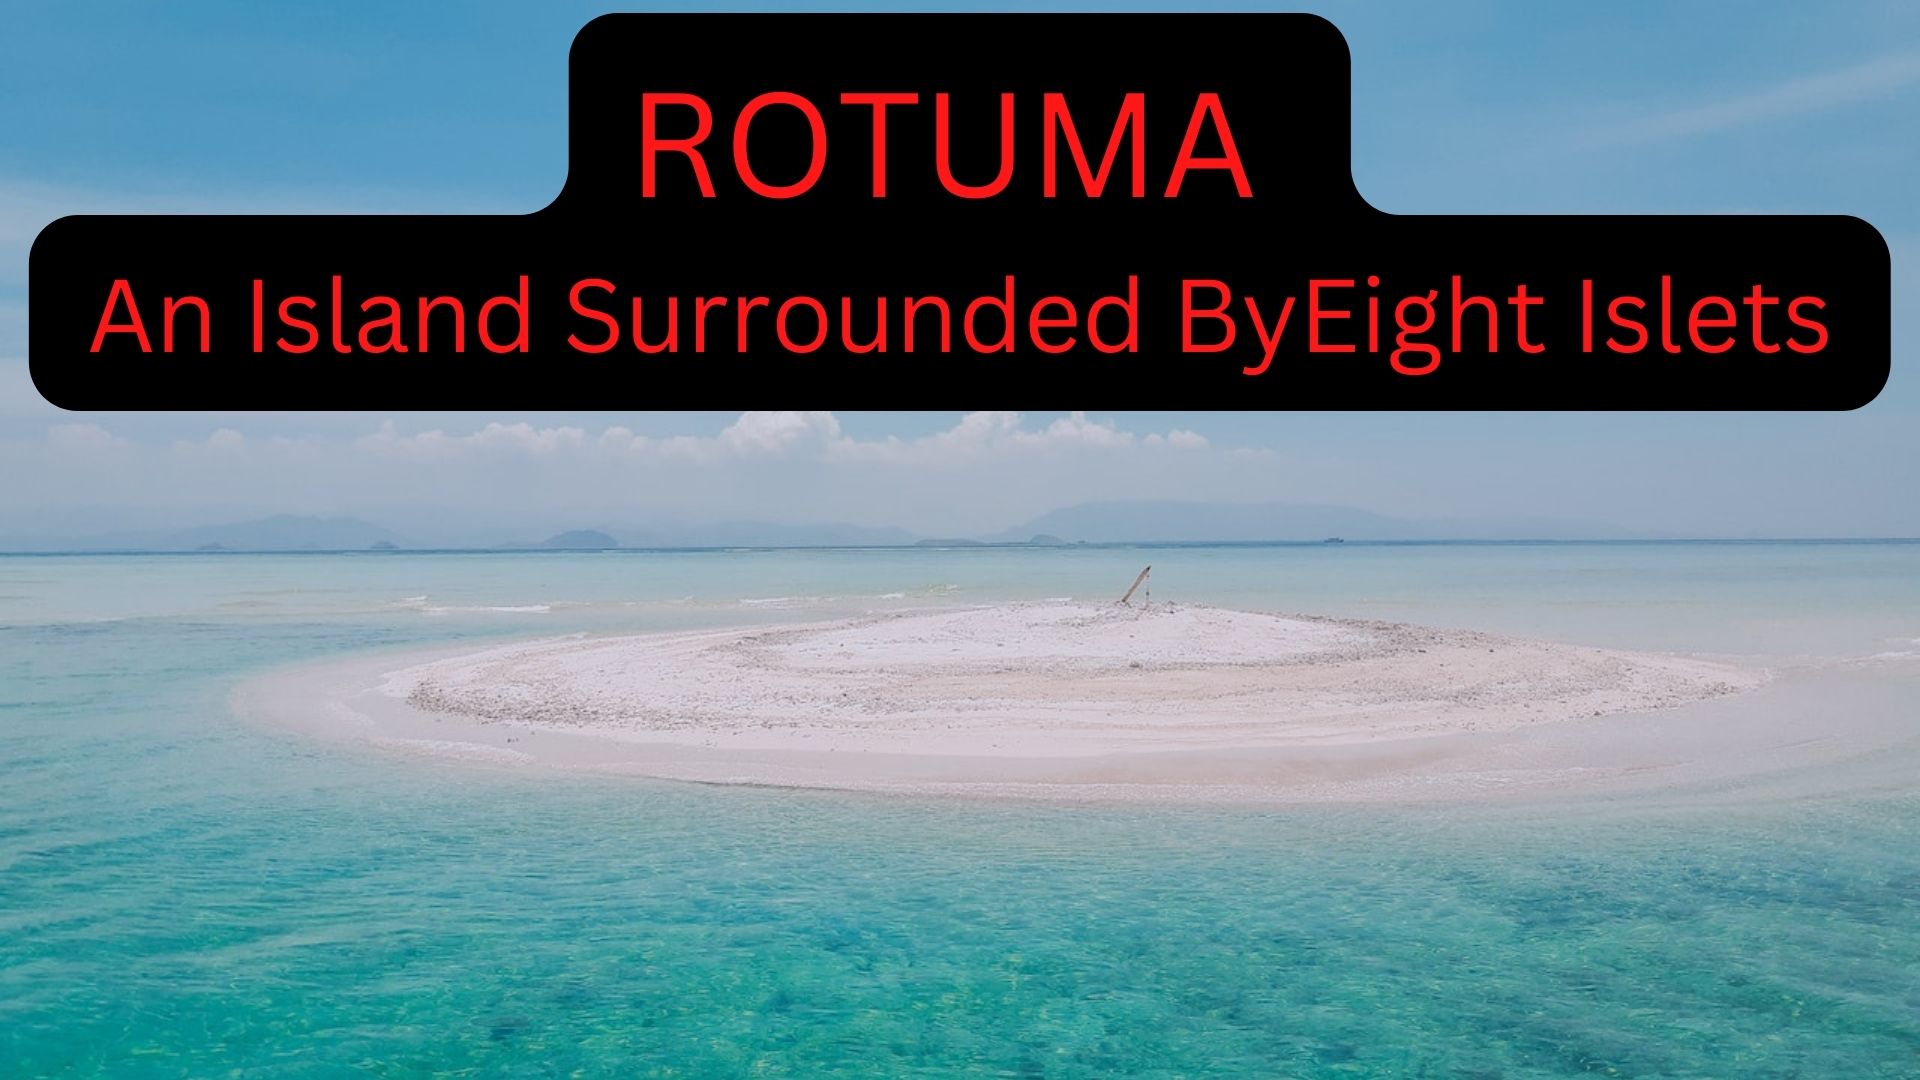 Rotuma - A Polynesian Island Surrounded By Eight Islets